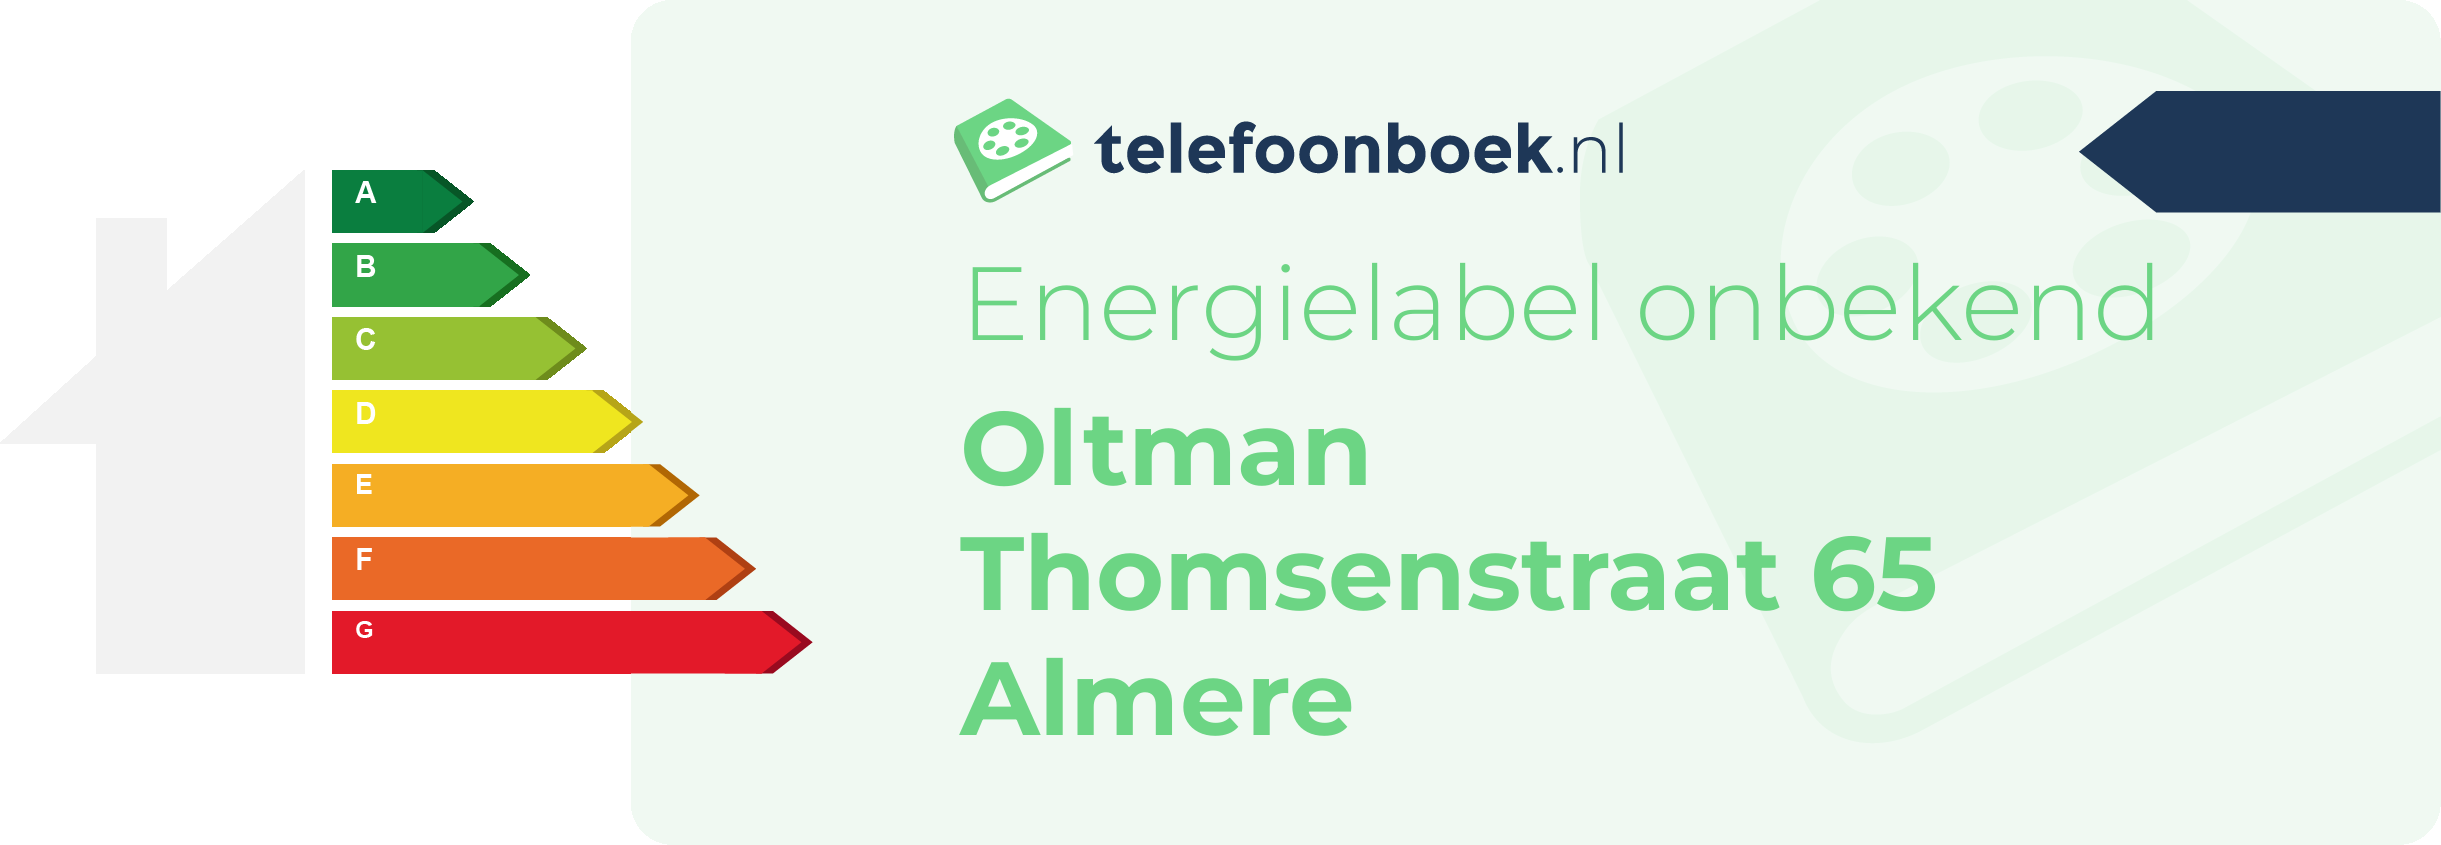 Energielabel Oltman Thomsenstraat 65 Almere